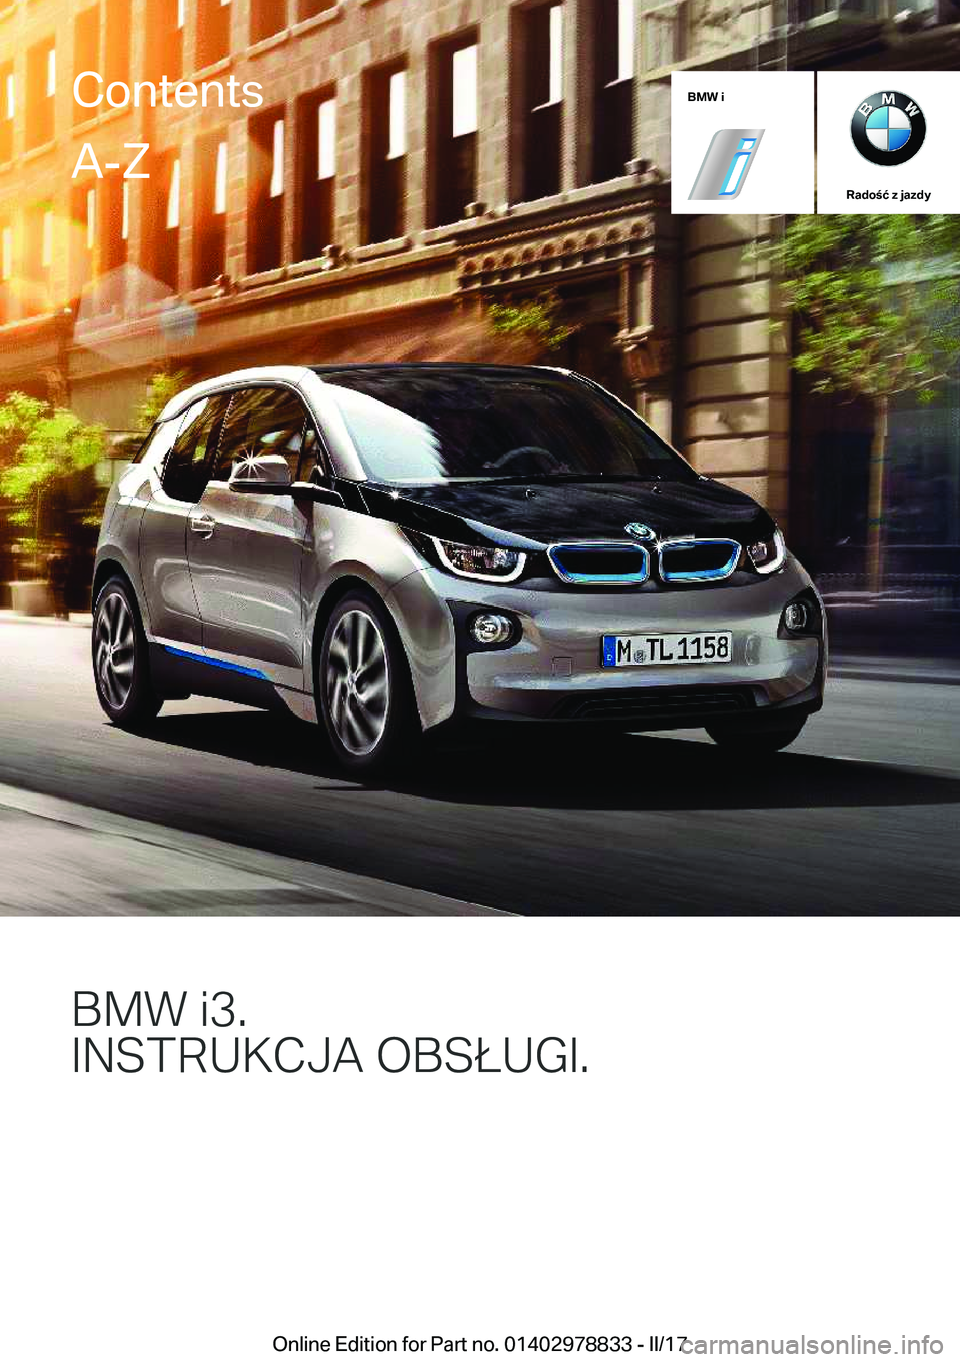 BMW I3 2017  Instrukcja obsługi (in Polish) �B�M�W��i
�R�a�d�o�